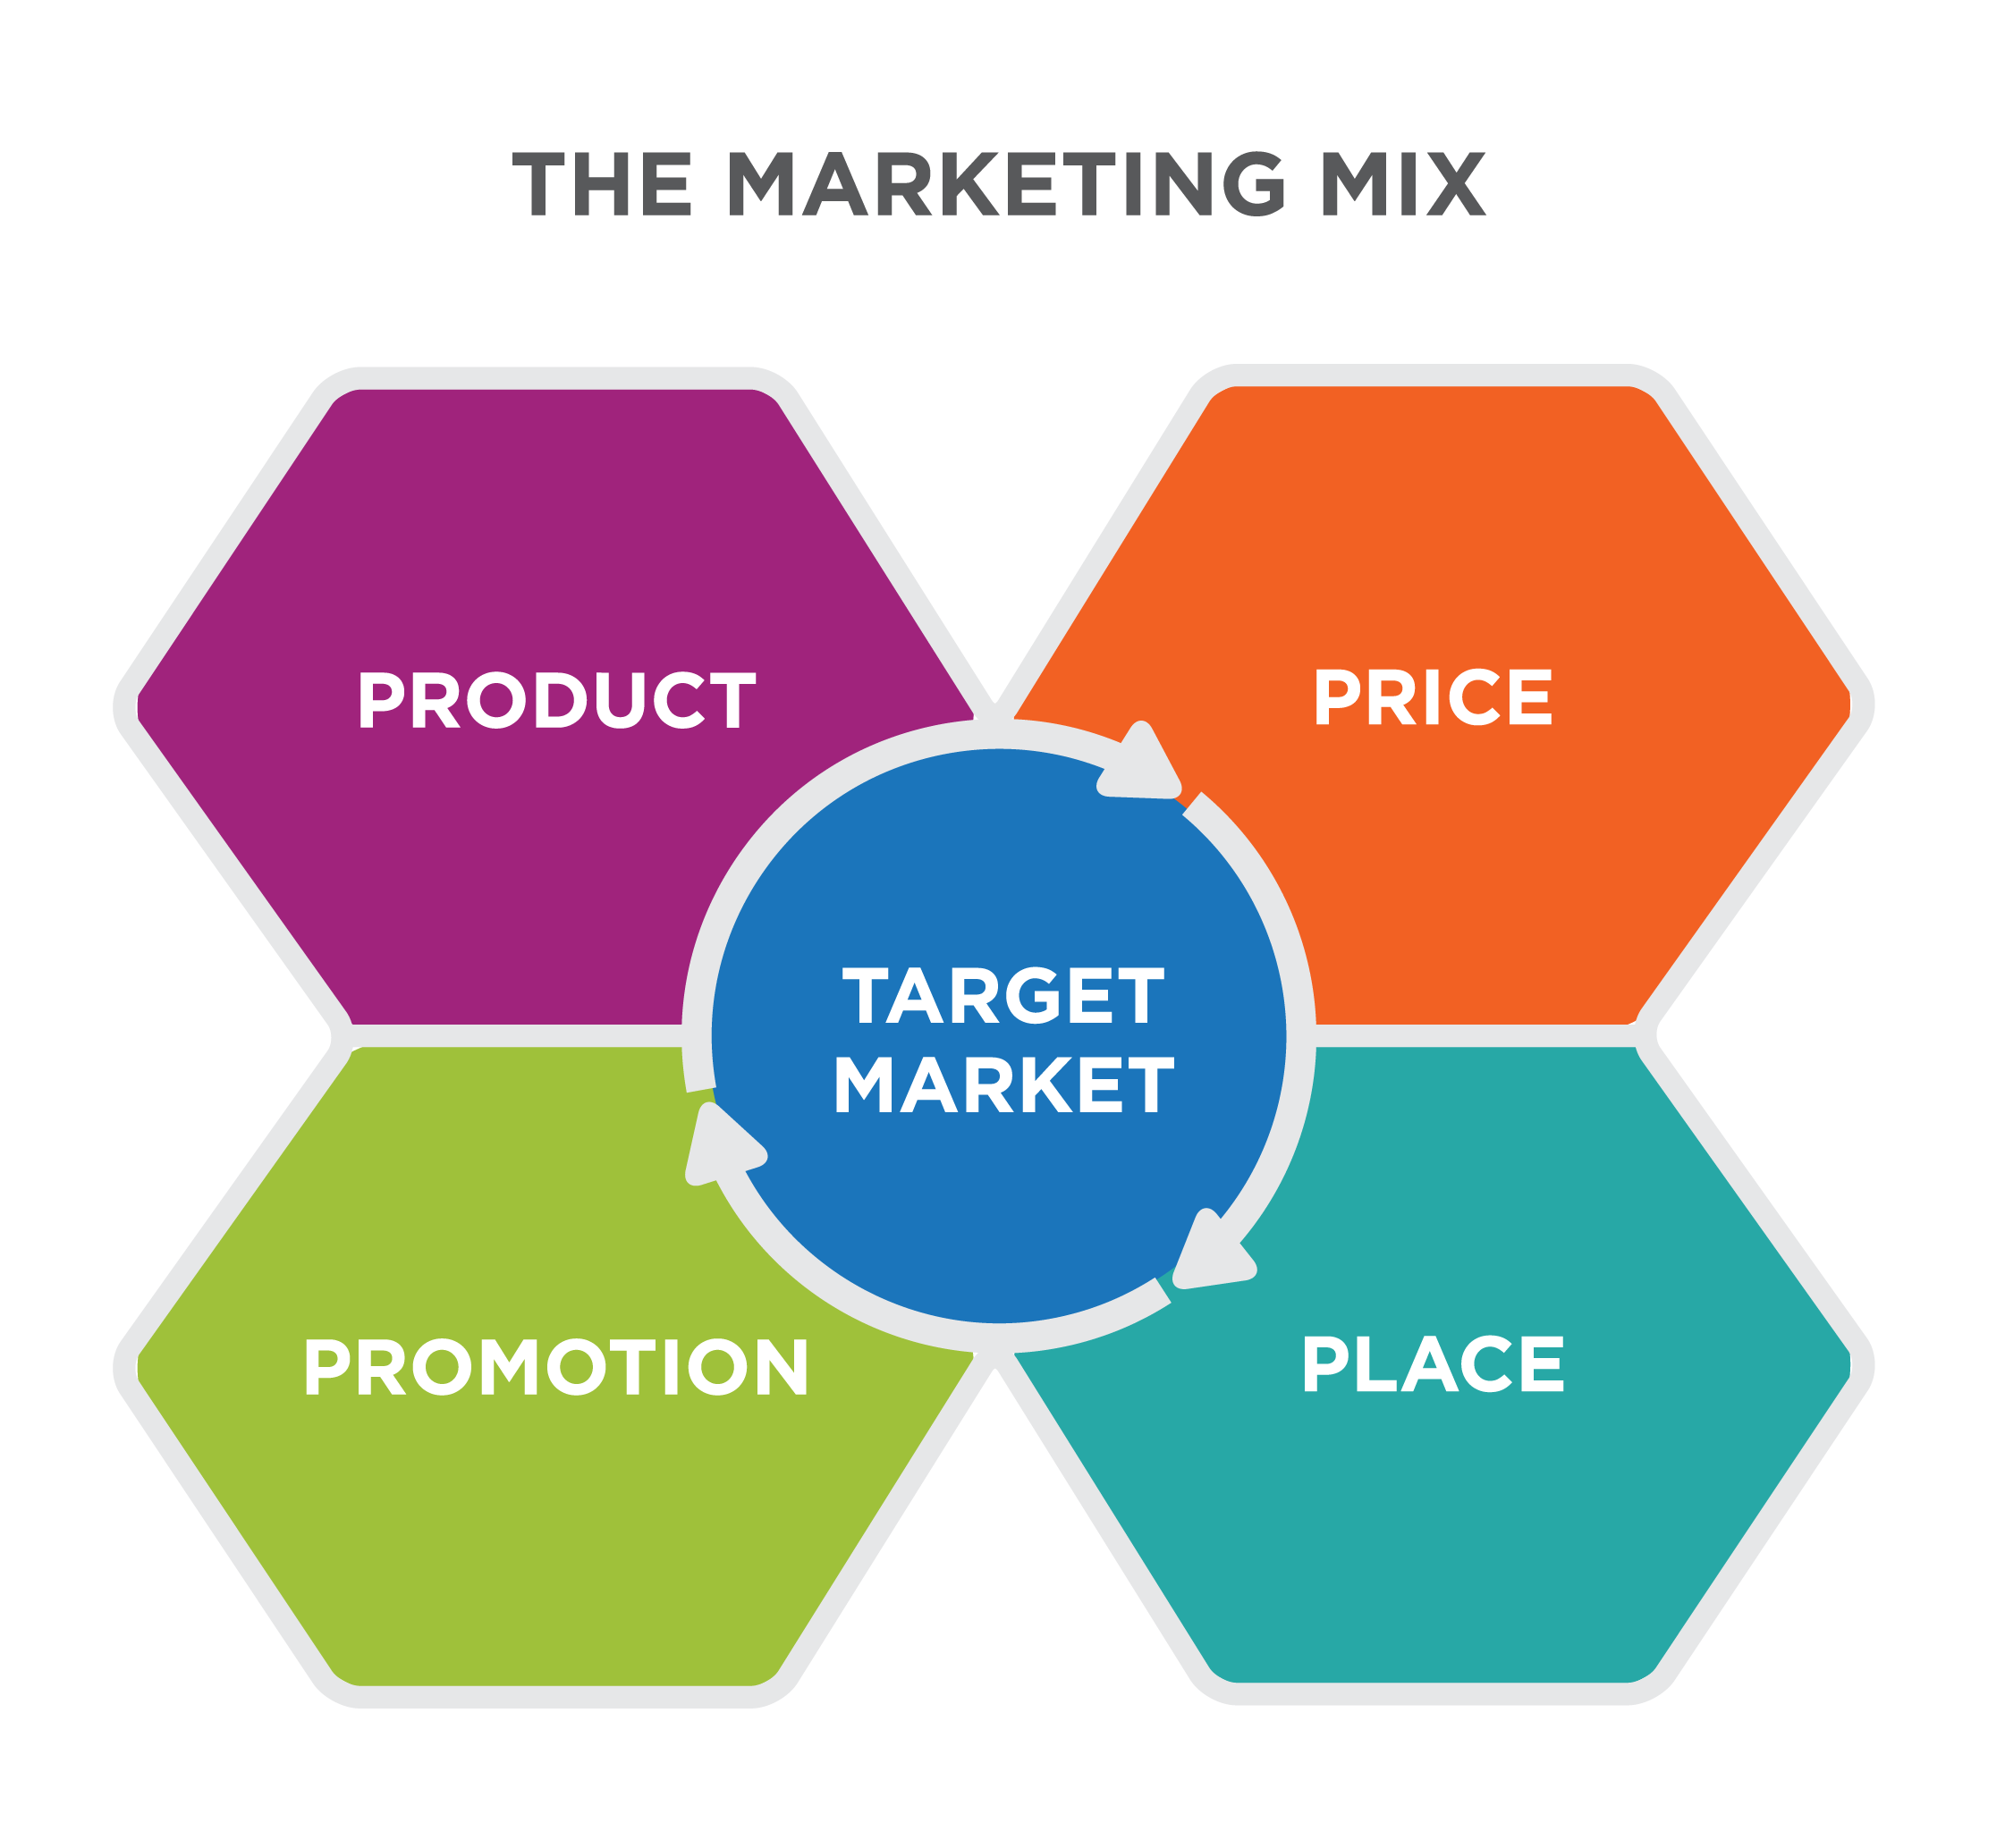 El Marketing Mix 1: El Mercado Objetivo está rodeado por las 4 Ps: Producto, Precio, Lugar y Promoción.